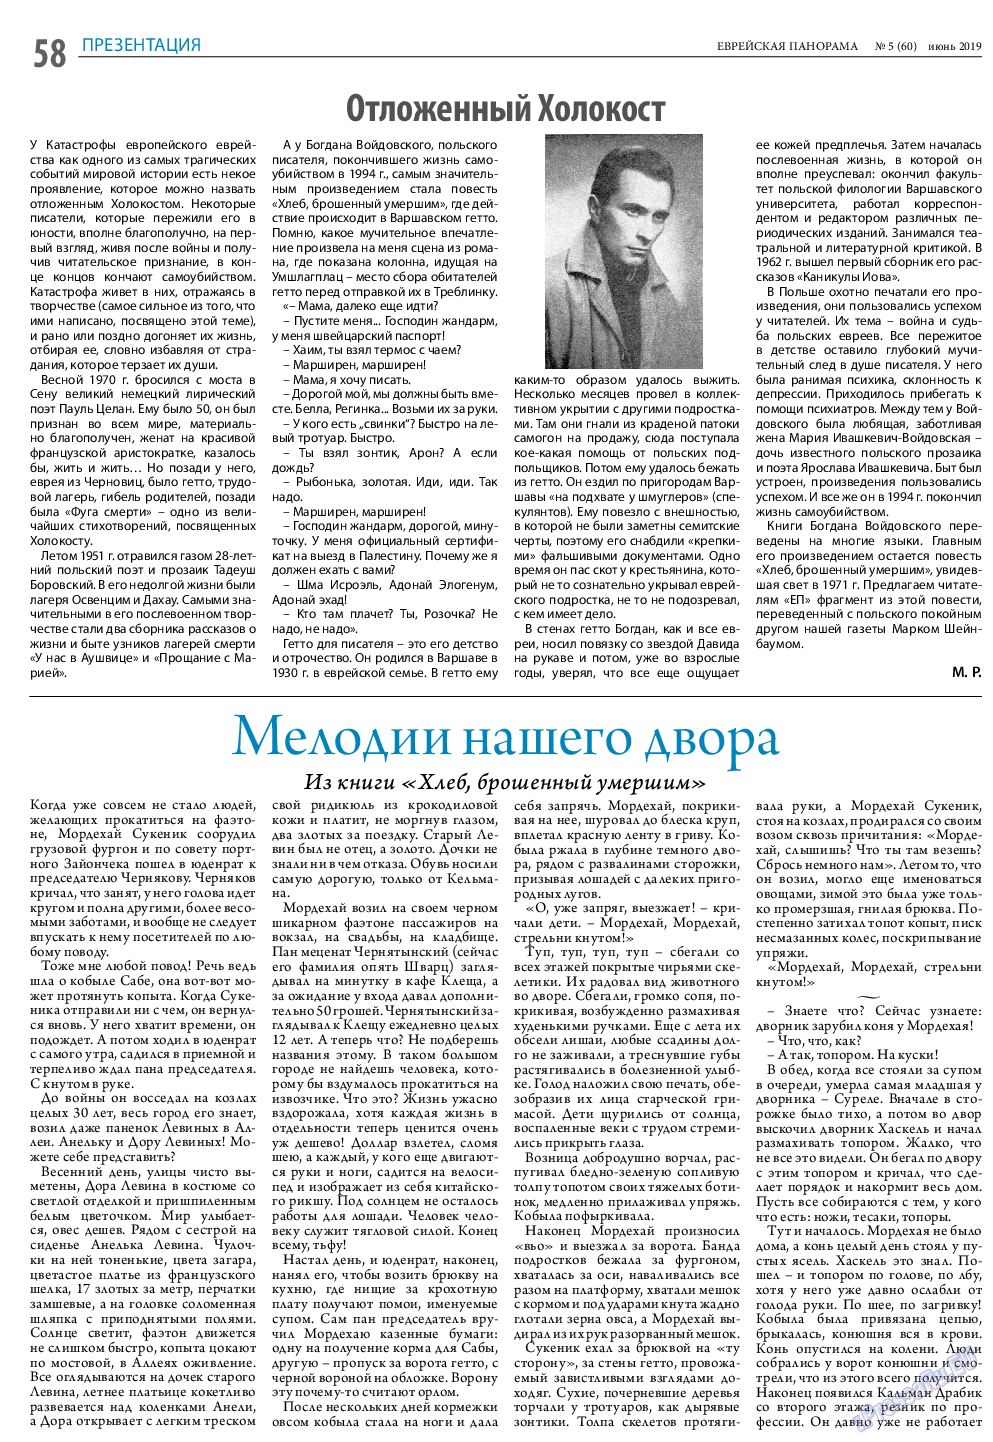 Еврейская панорама (газета). 2019 год, номер 6, стр. 58